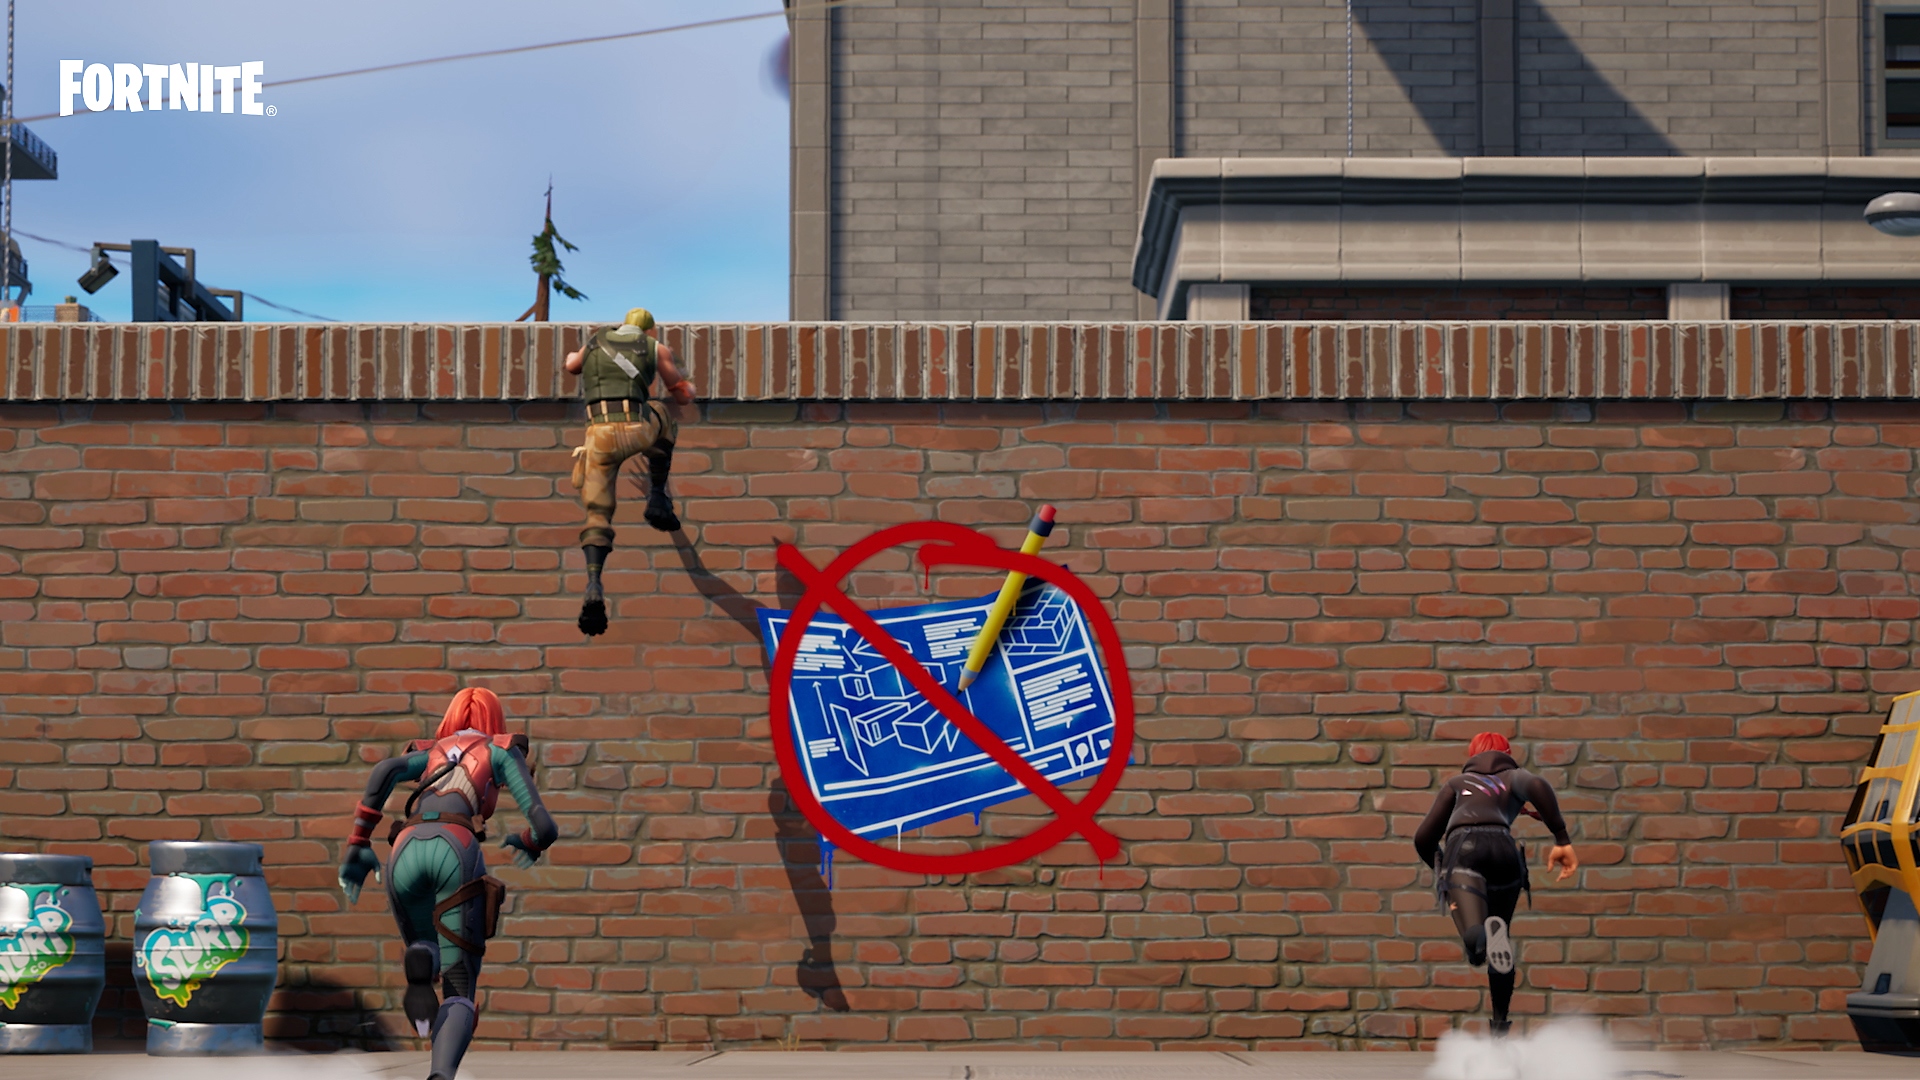 Режим «Нульова висота» у Fortnite – персонажі піднімаються на стіну